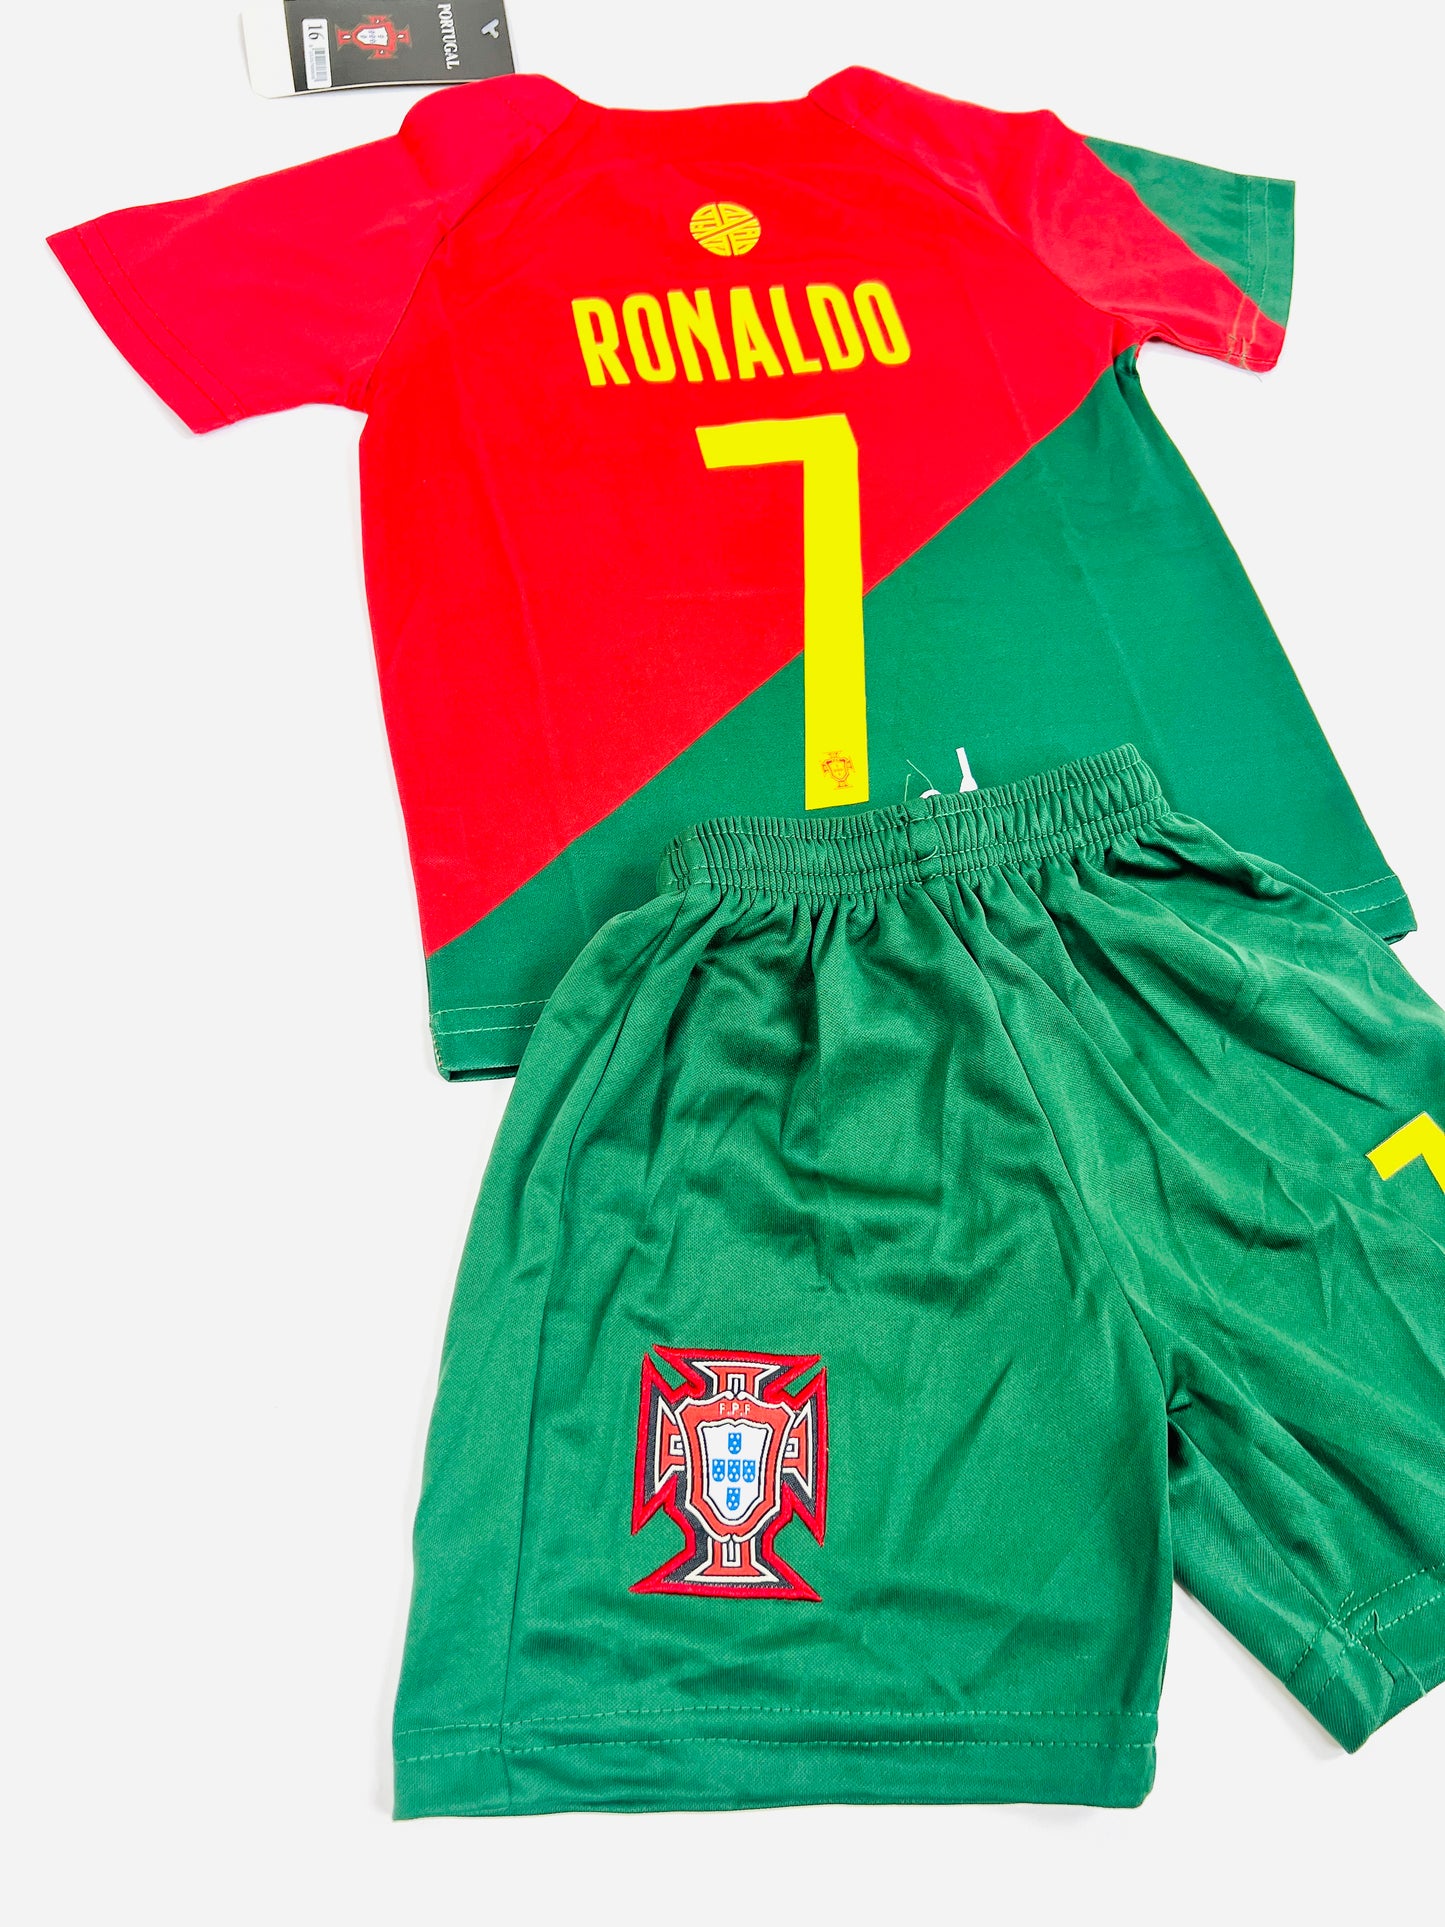 Ronaldo #7 Portugal Home Youth soccer set – thewonderkits.com